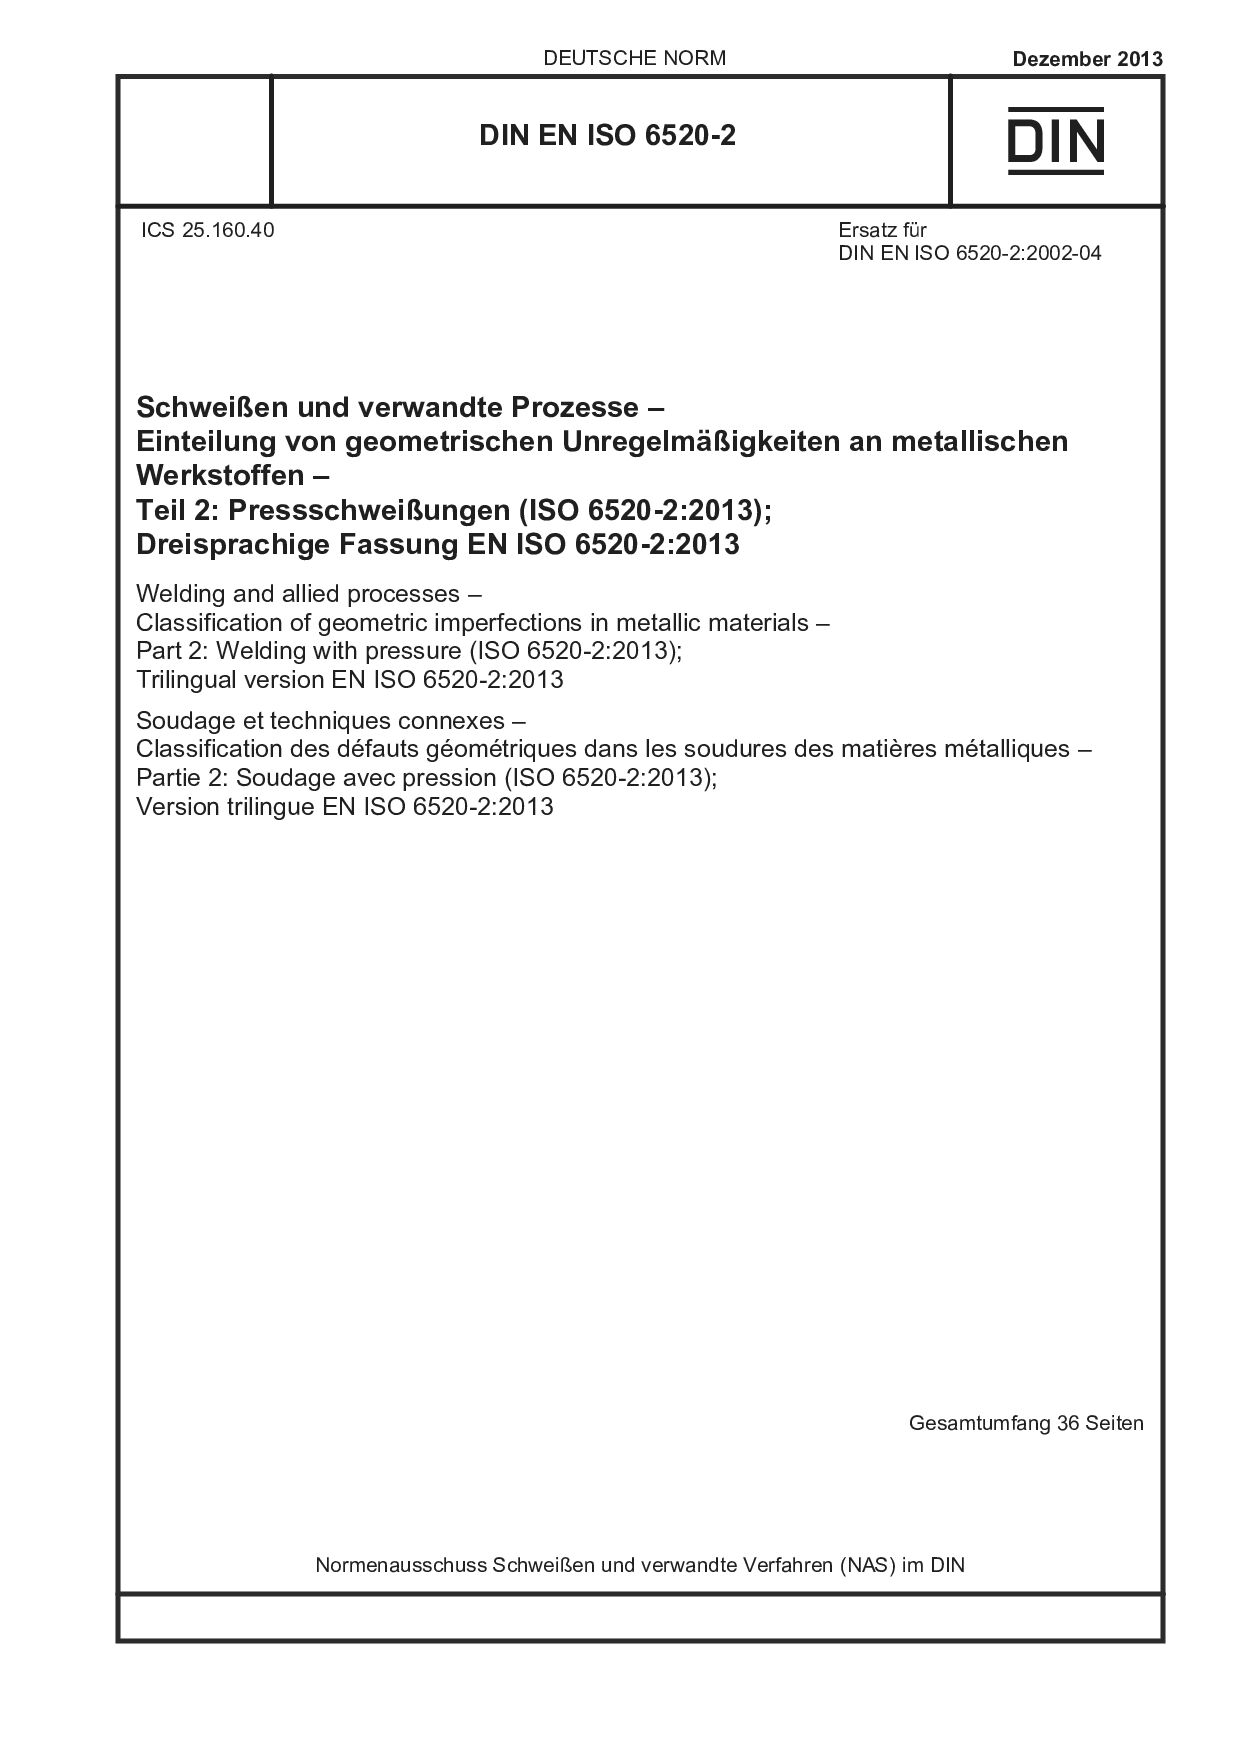 DIN EN ISO 6520-2:2013